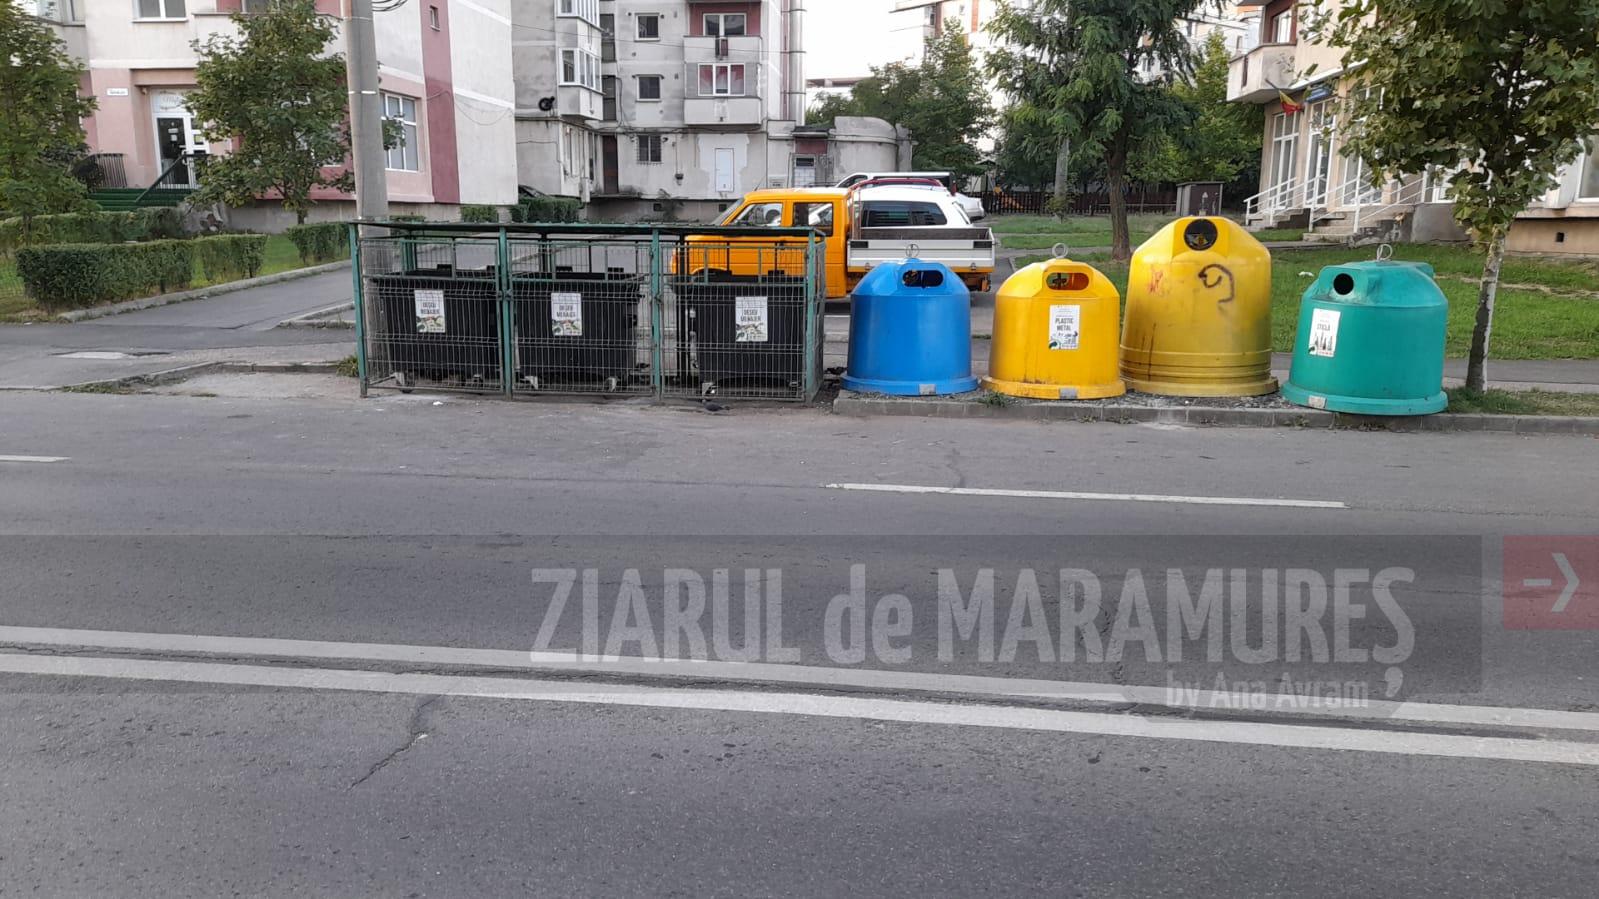 ADI Deșeuri Maramureș: Suspendarea serviciului de colectare pe Baia Mare, netemeinică